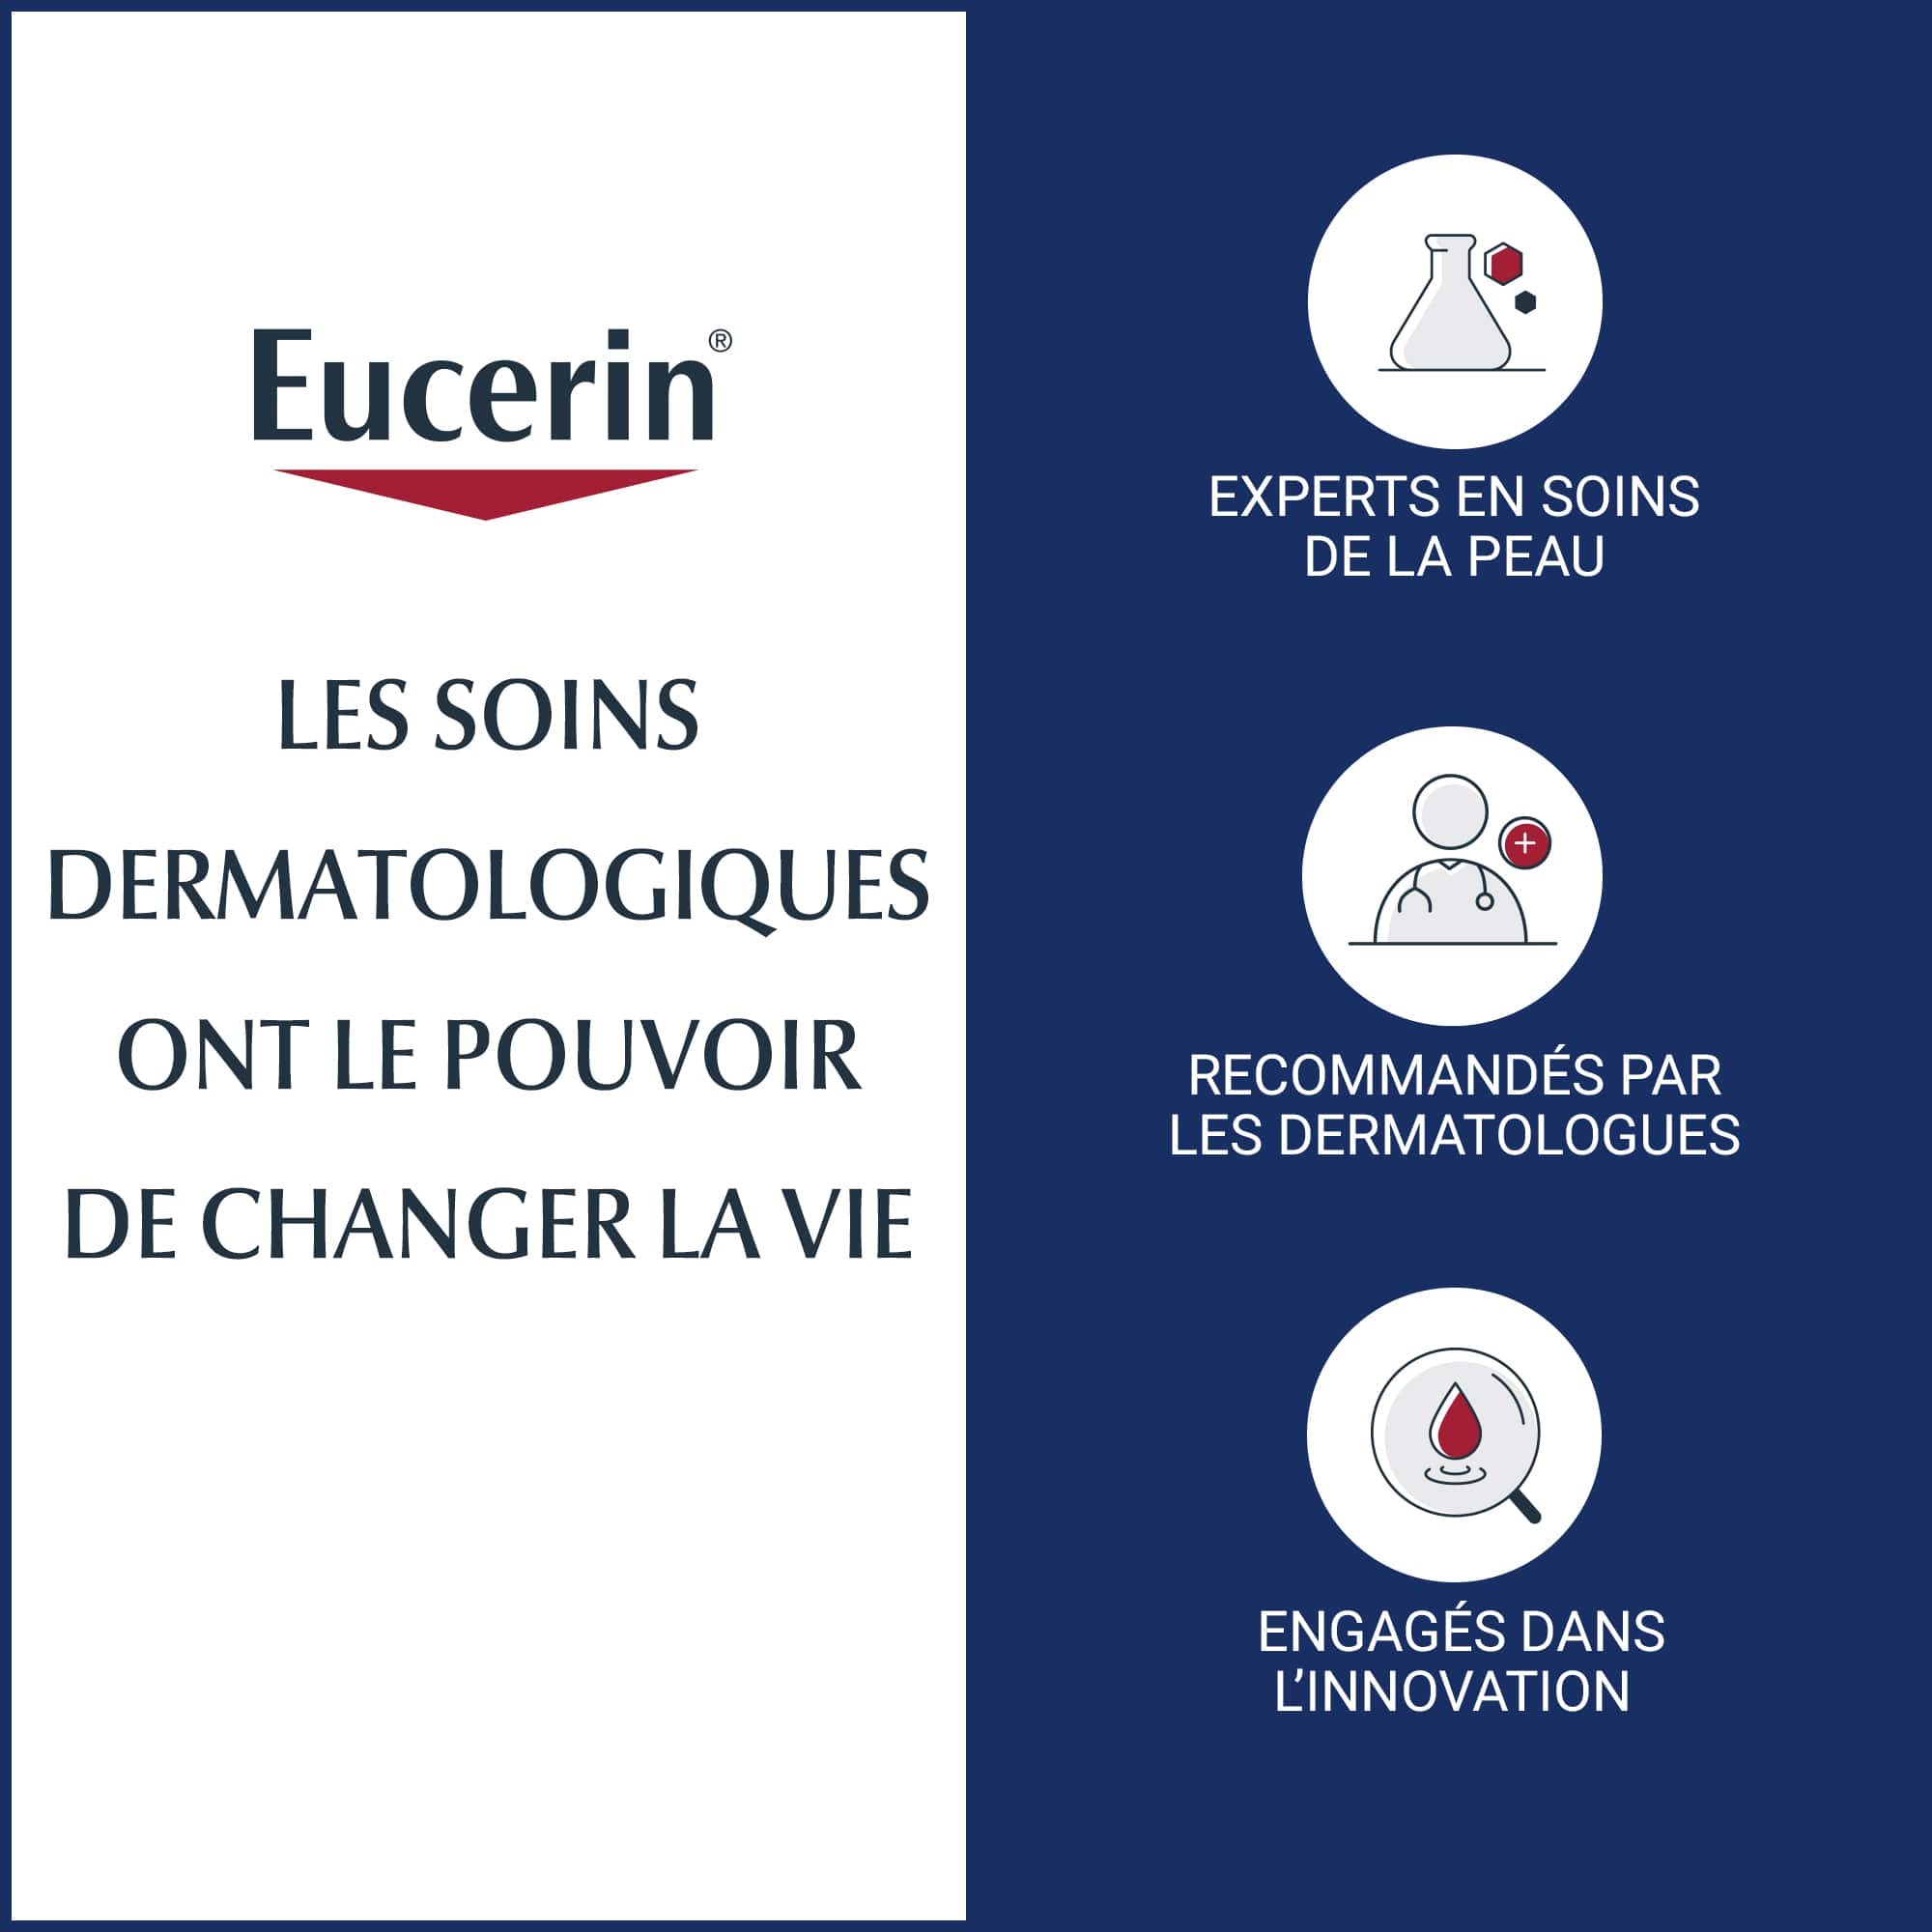 Une image décrit les avantages d’utiliser les soins dermatologiques Eucerin, mentionnant par exemple qu’ils sont Recommandés par les dermatologues.